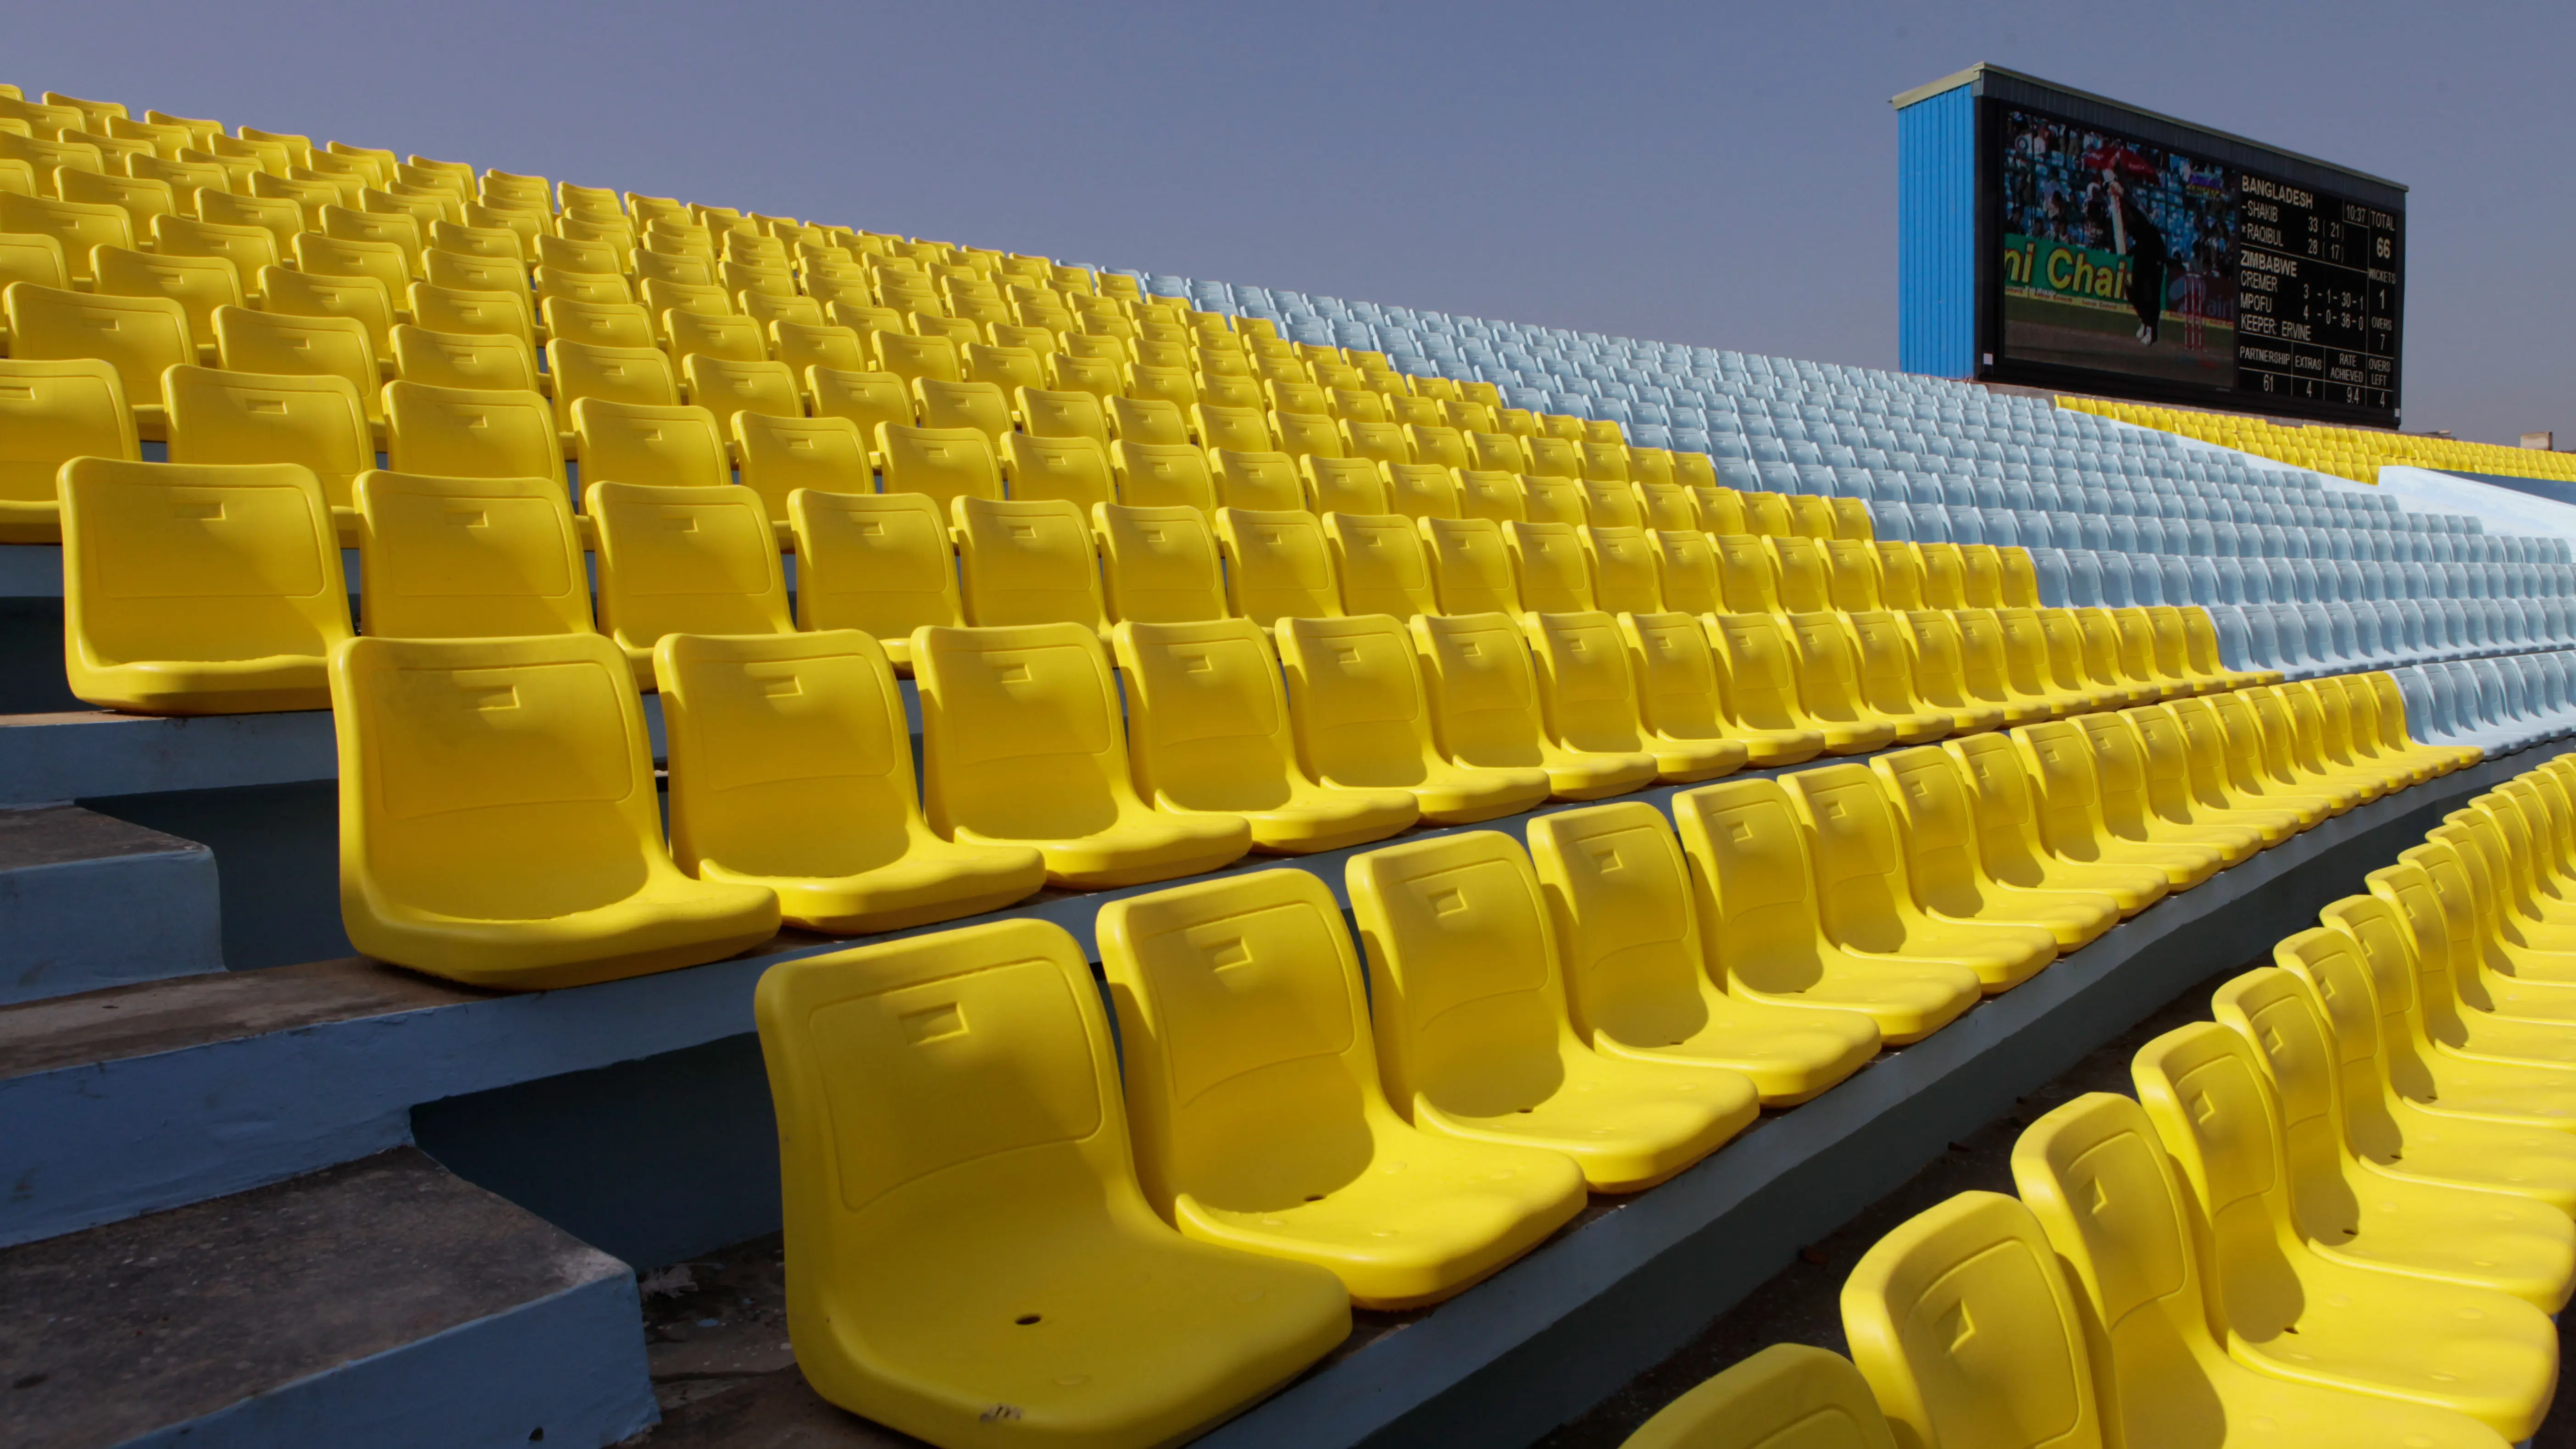 Сиденья на стадионе. Сидения складные для стадиона. Стадион с желтыми сиденьями. Пластмассовое сиденье для стадионов са 015.